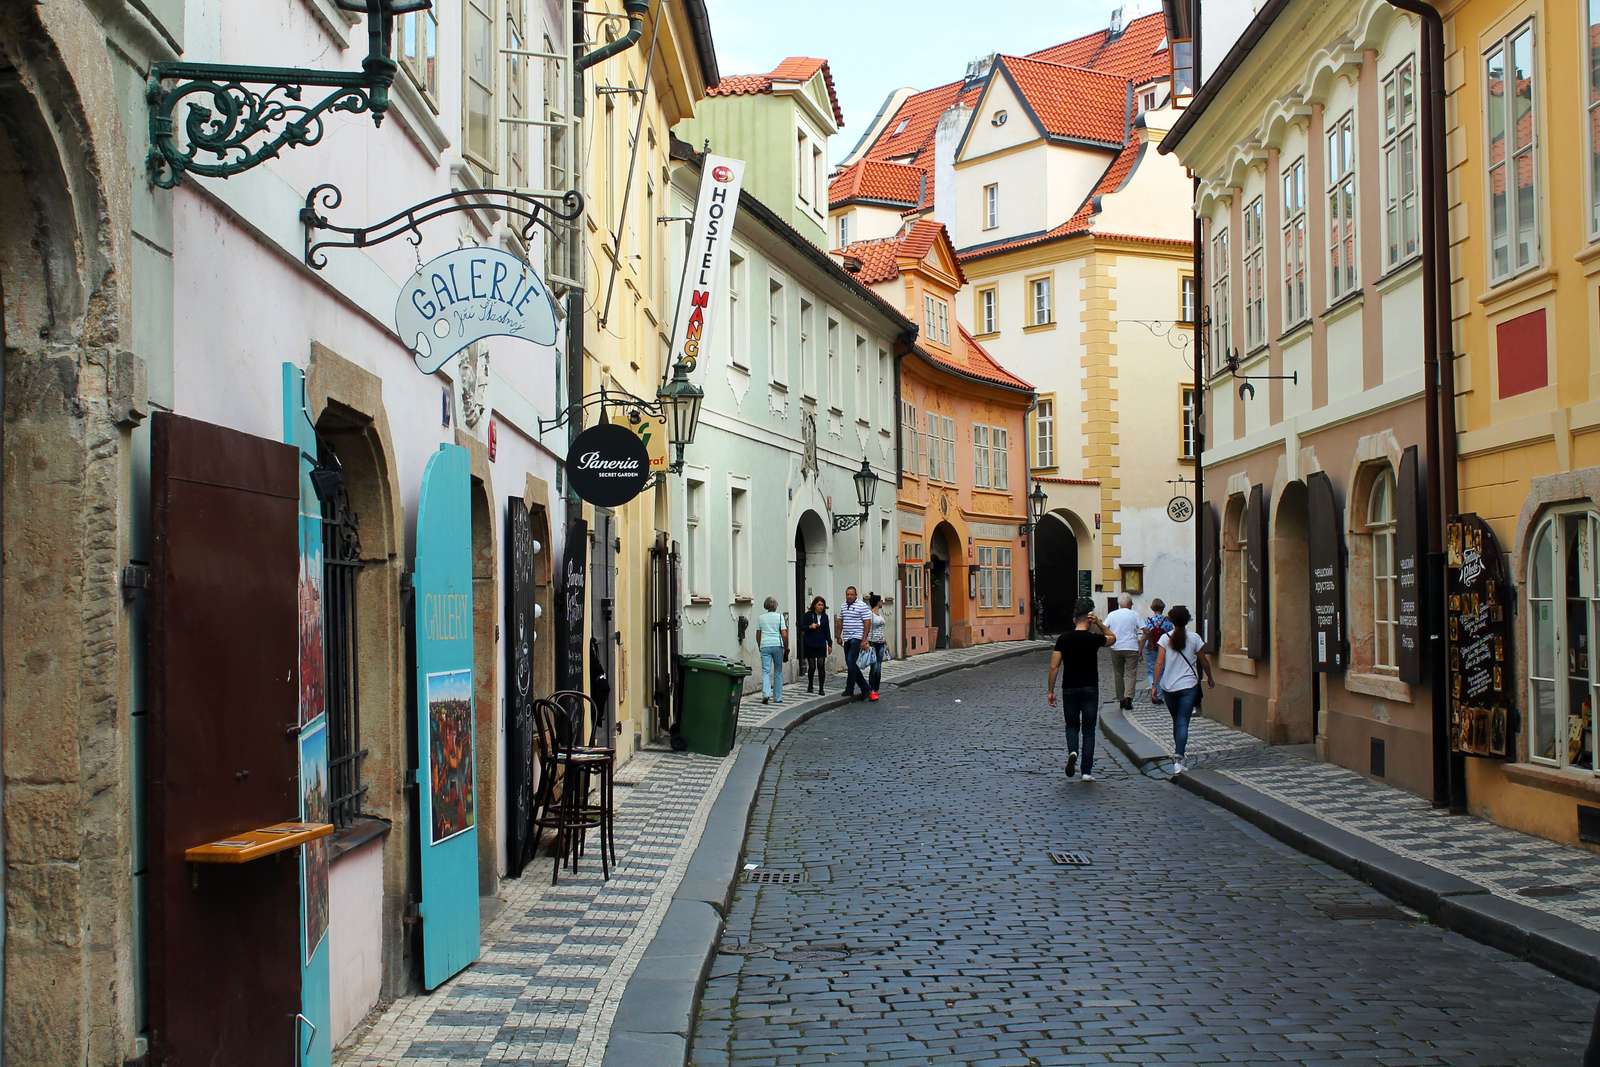 Прага, Чехия пазл онлайн